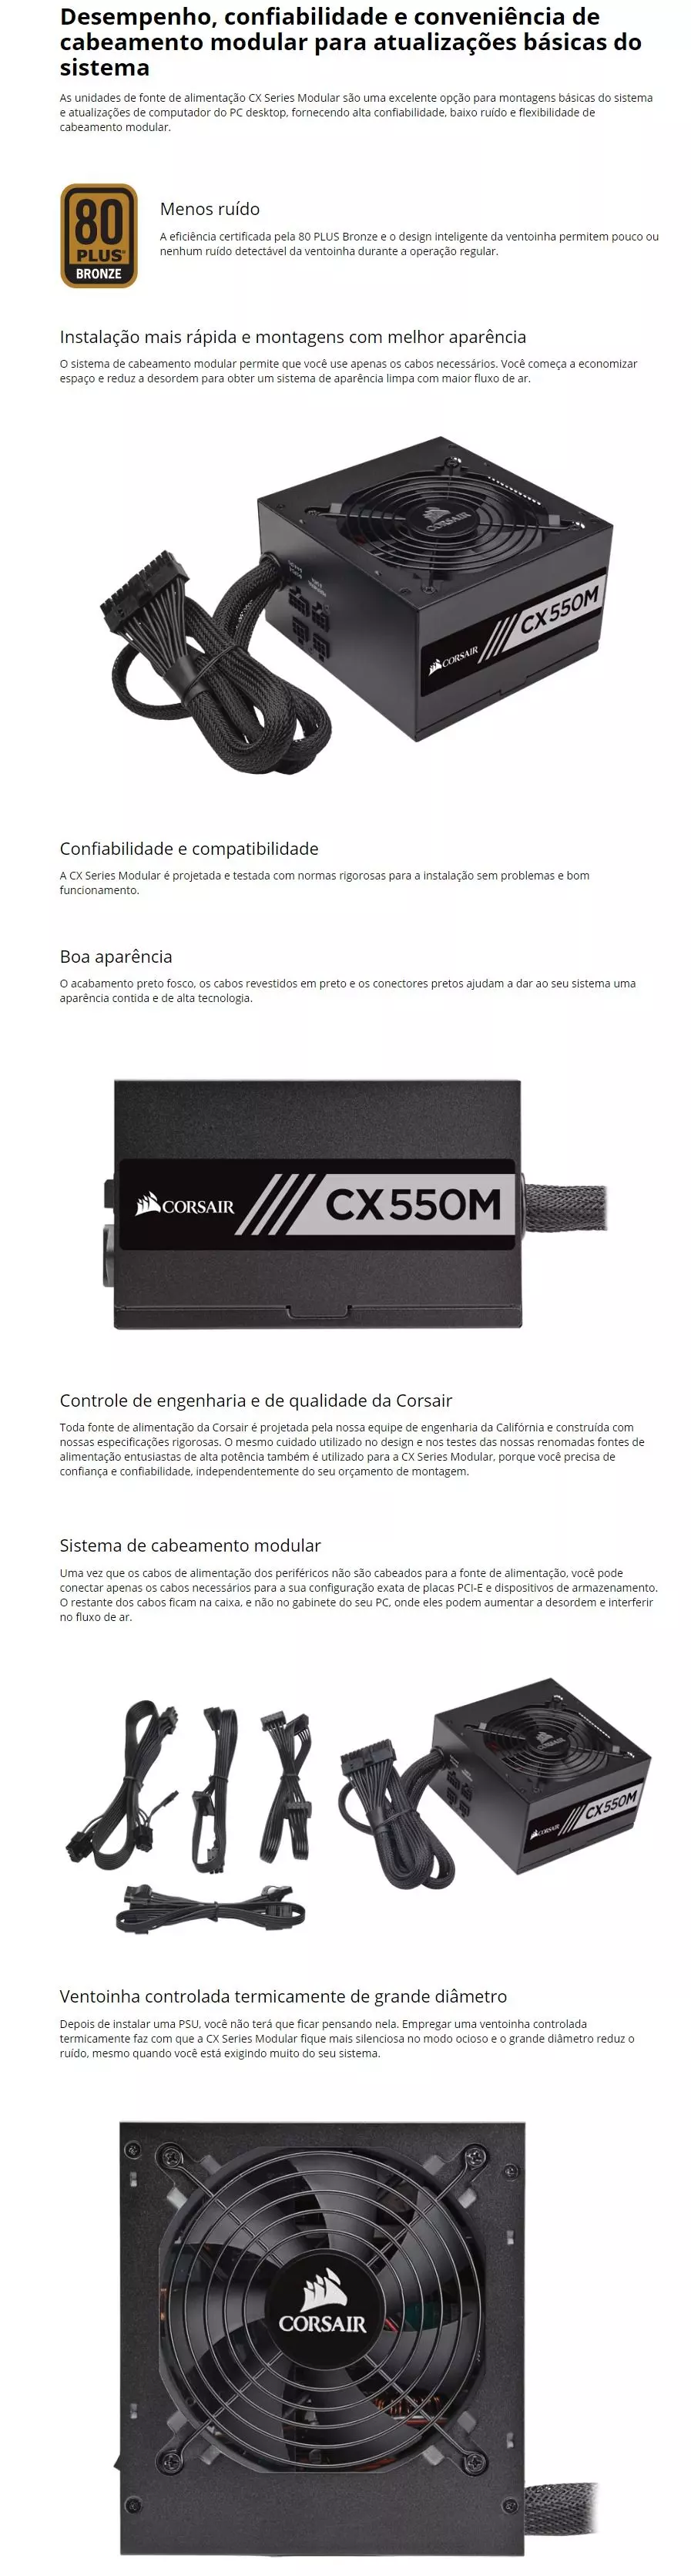 Fonte Gamemax 600W Semi-Modular ATX12V v2.3 80 PLUS Bronze — HARDSTORE  Informática - Loja de Informática e PC Gamer em Porto Alegre e Caxias do Sul